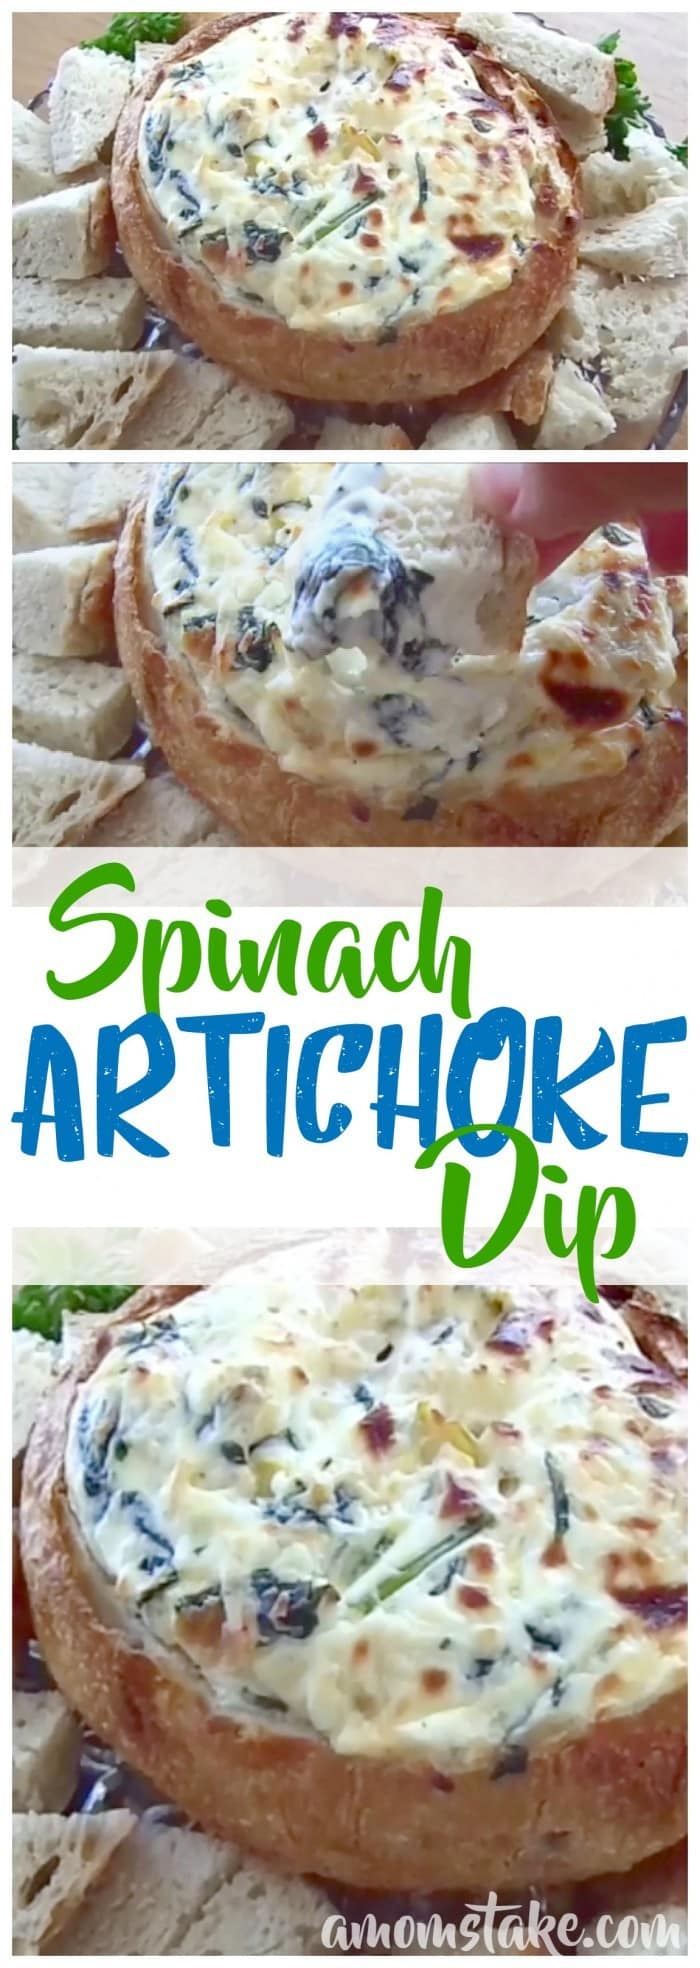 Easy Spinach Artichoke Dip Recipe Spinach Artichoke Dip Recipe